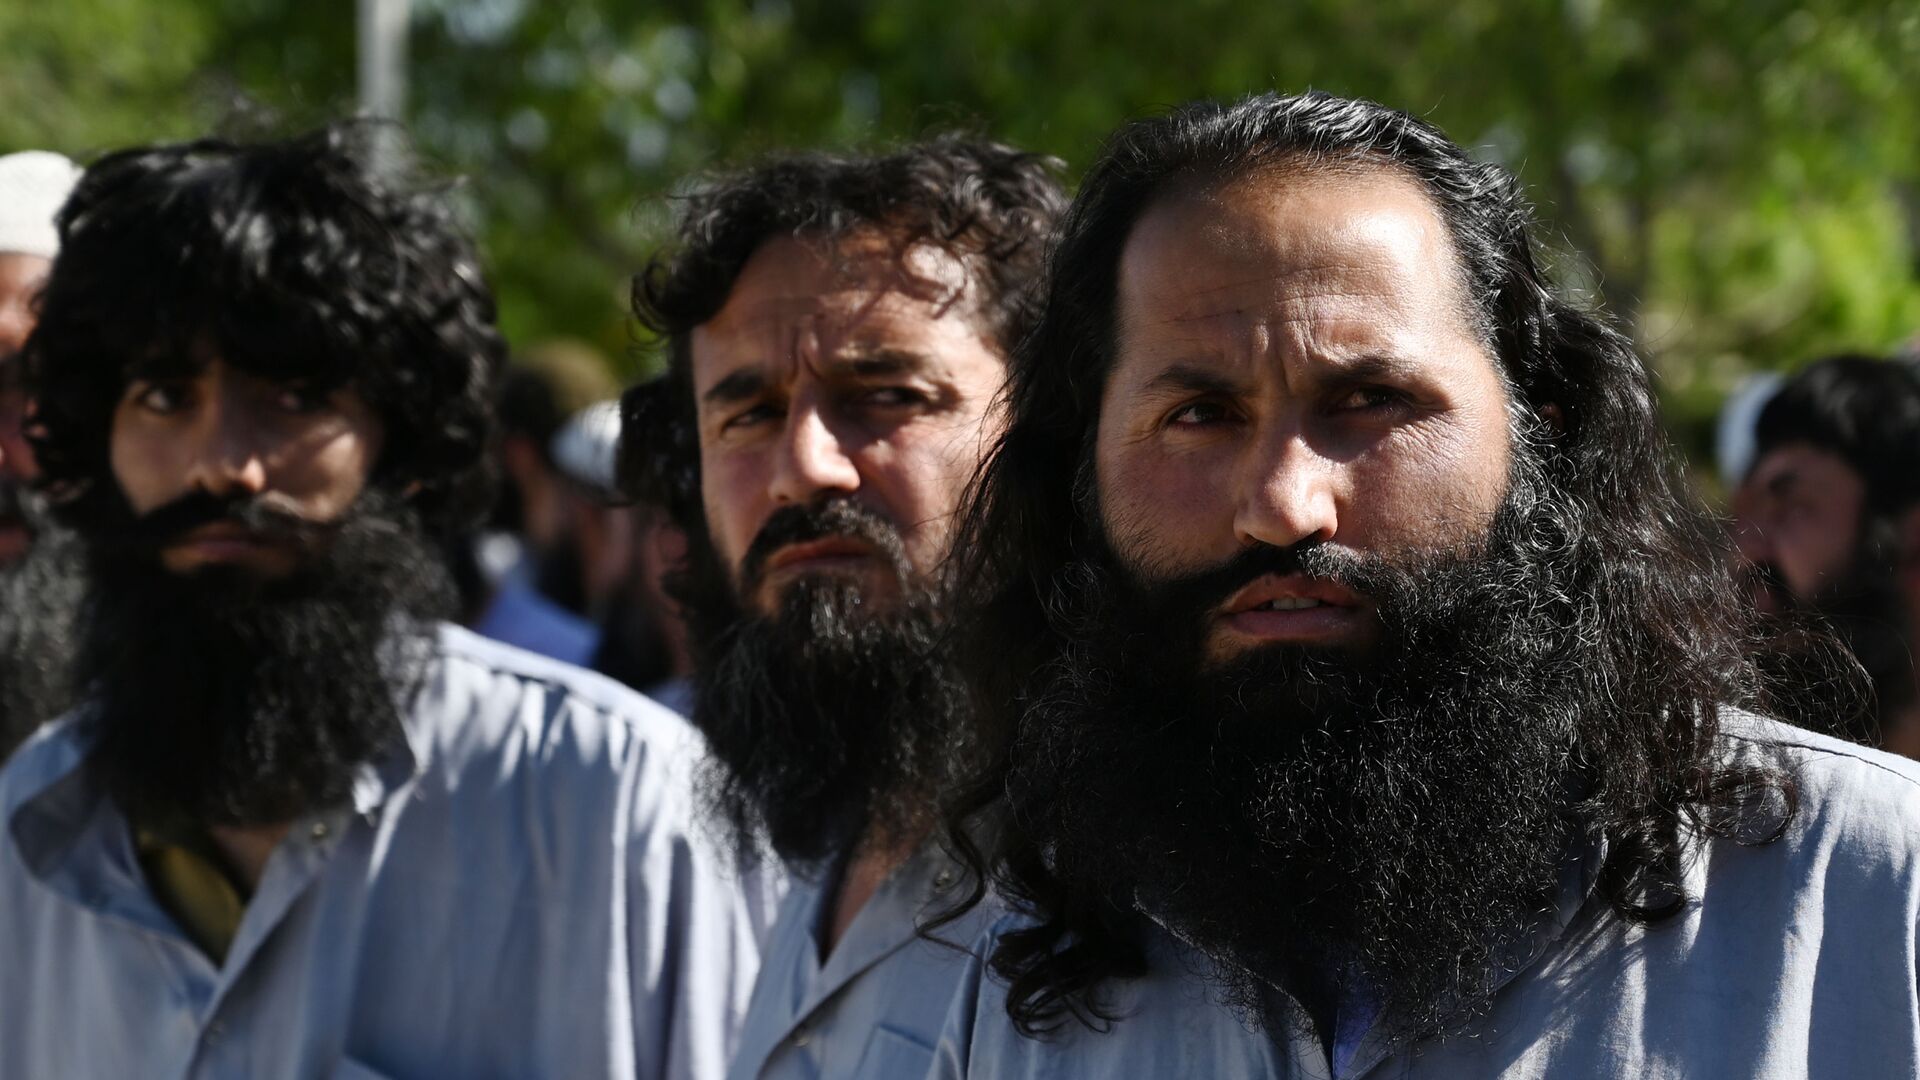 Заключенные талибы во время их освобождения из тюрьмы Баграм, Афганистан - Sputnik Таджикистан, 1920, 28.04.2021